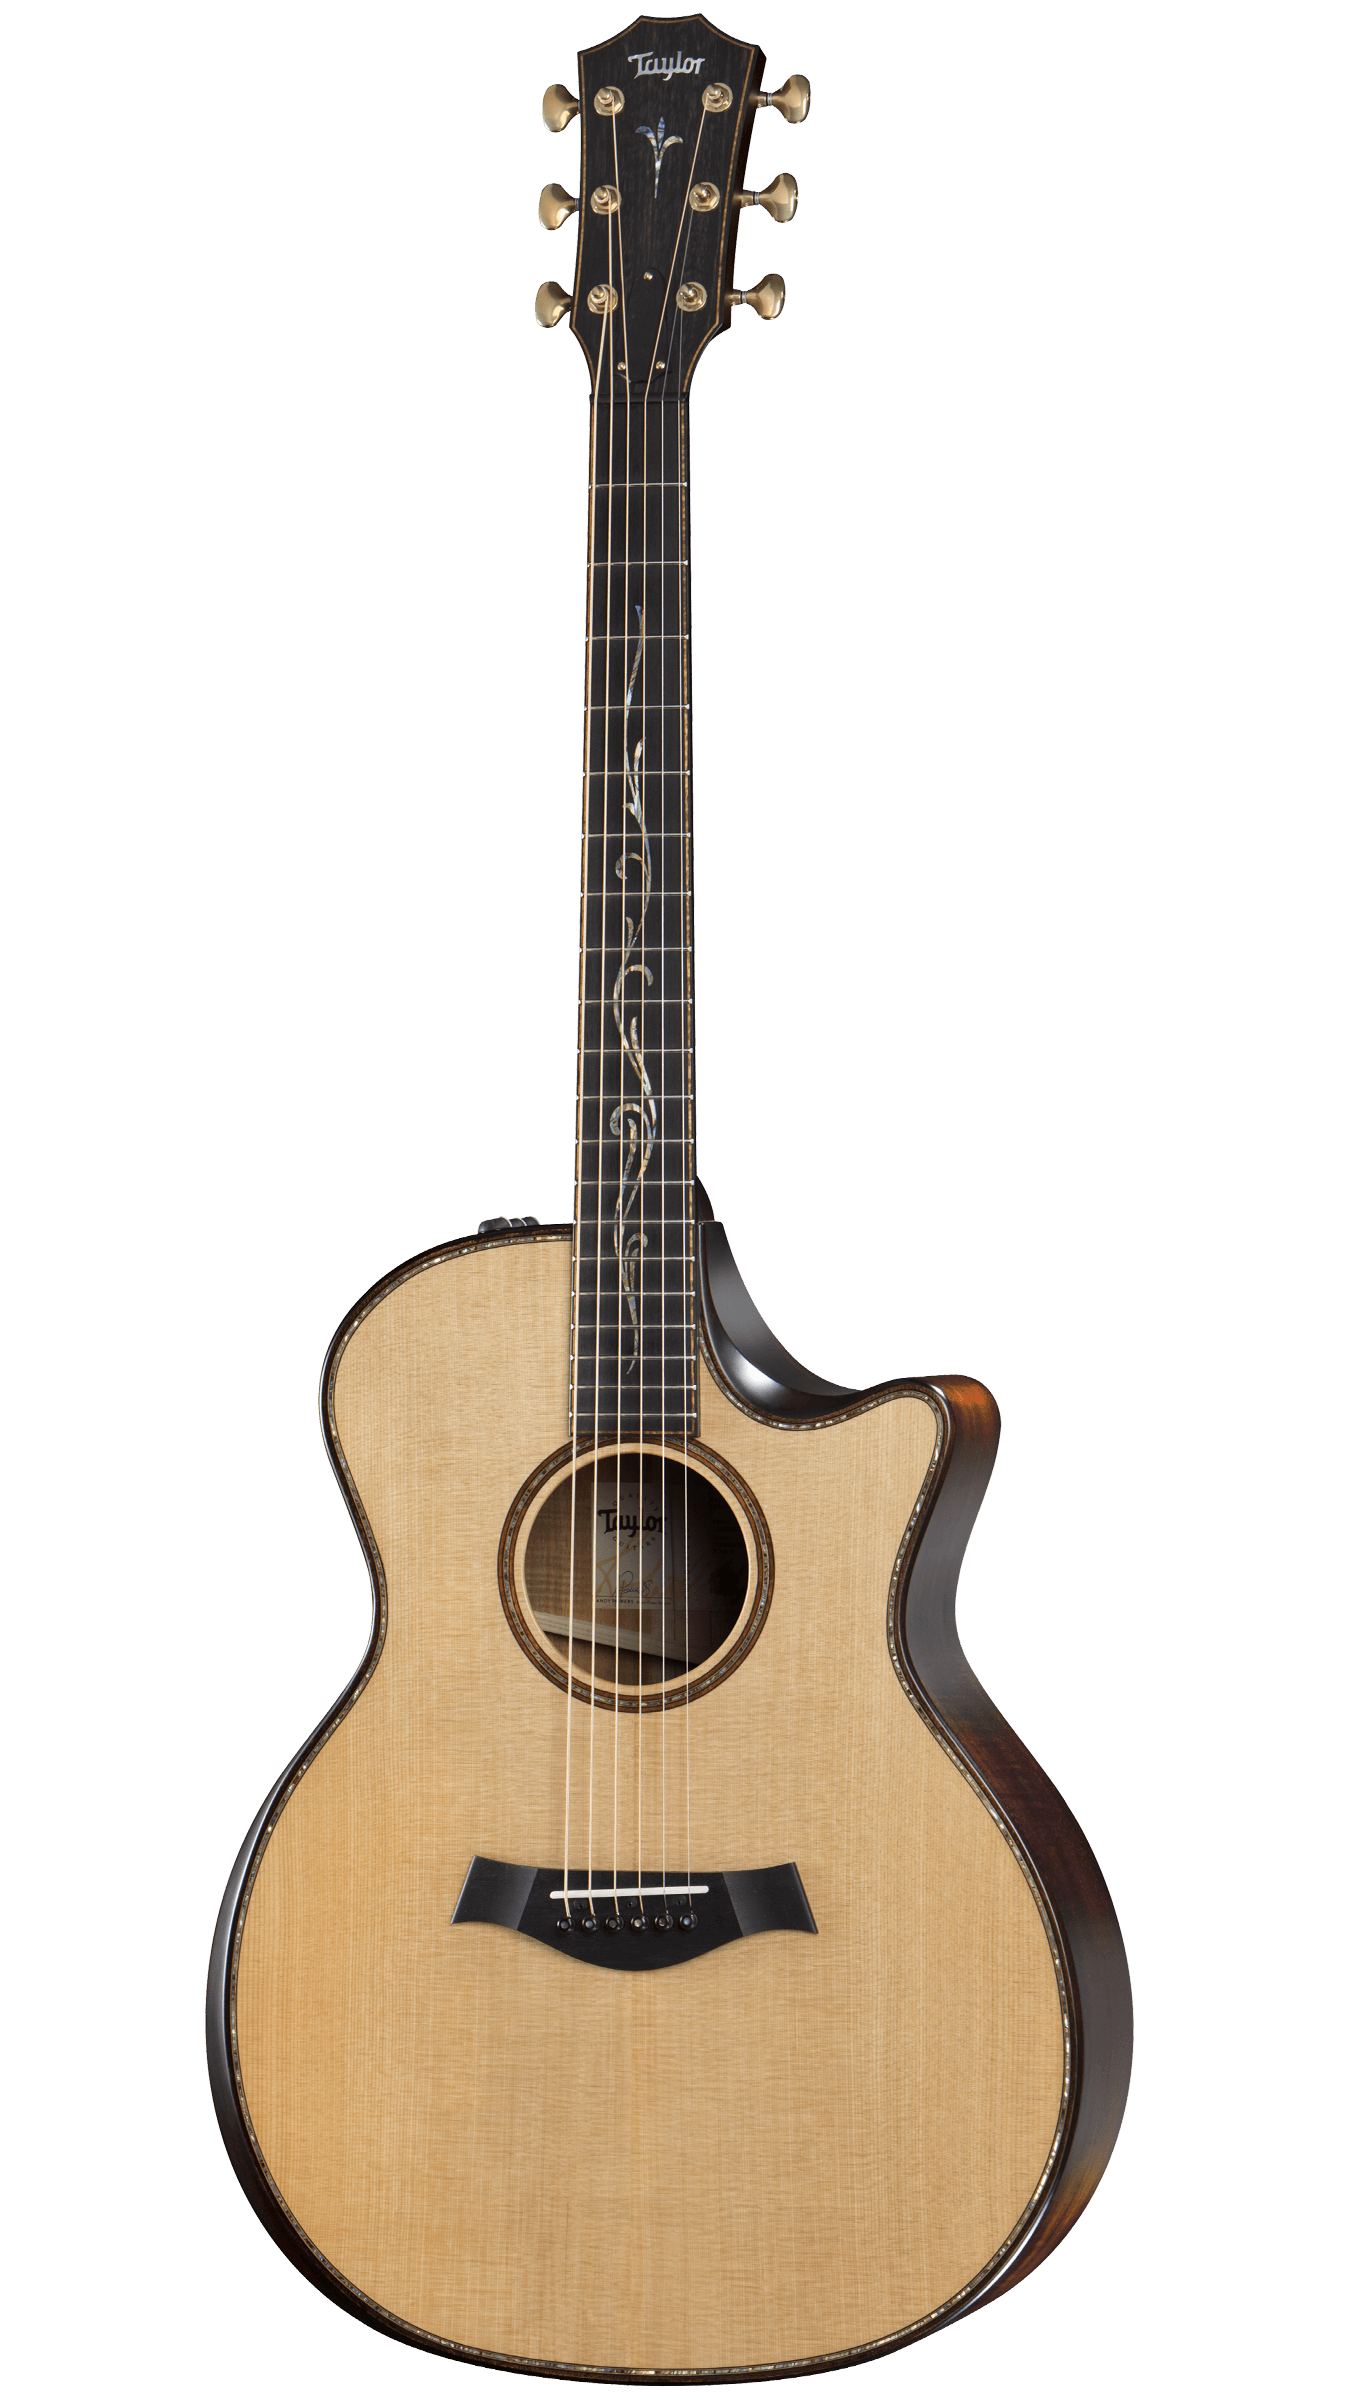 Taylor Builder's Edition K14ce Acoustic Guitar 木結他